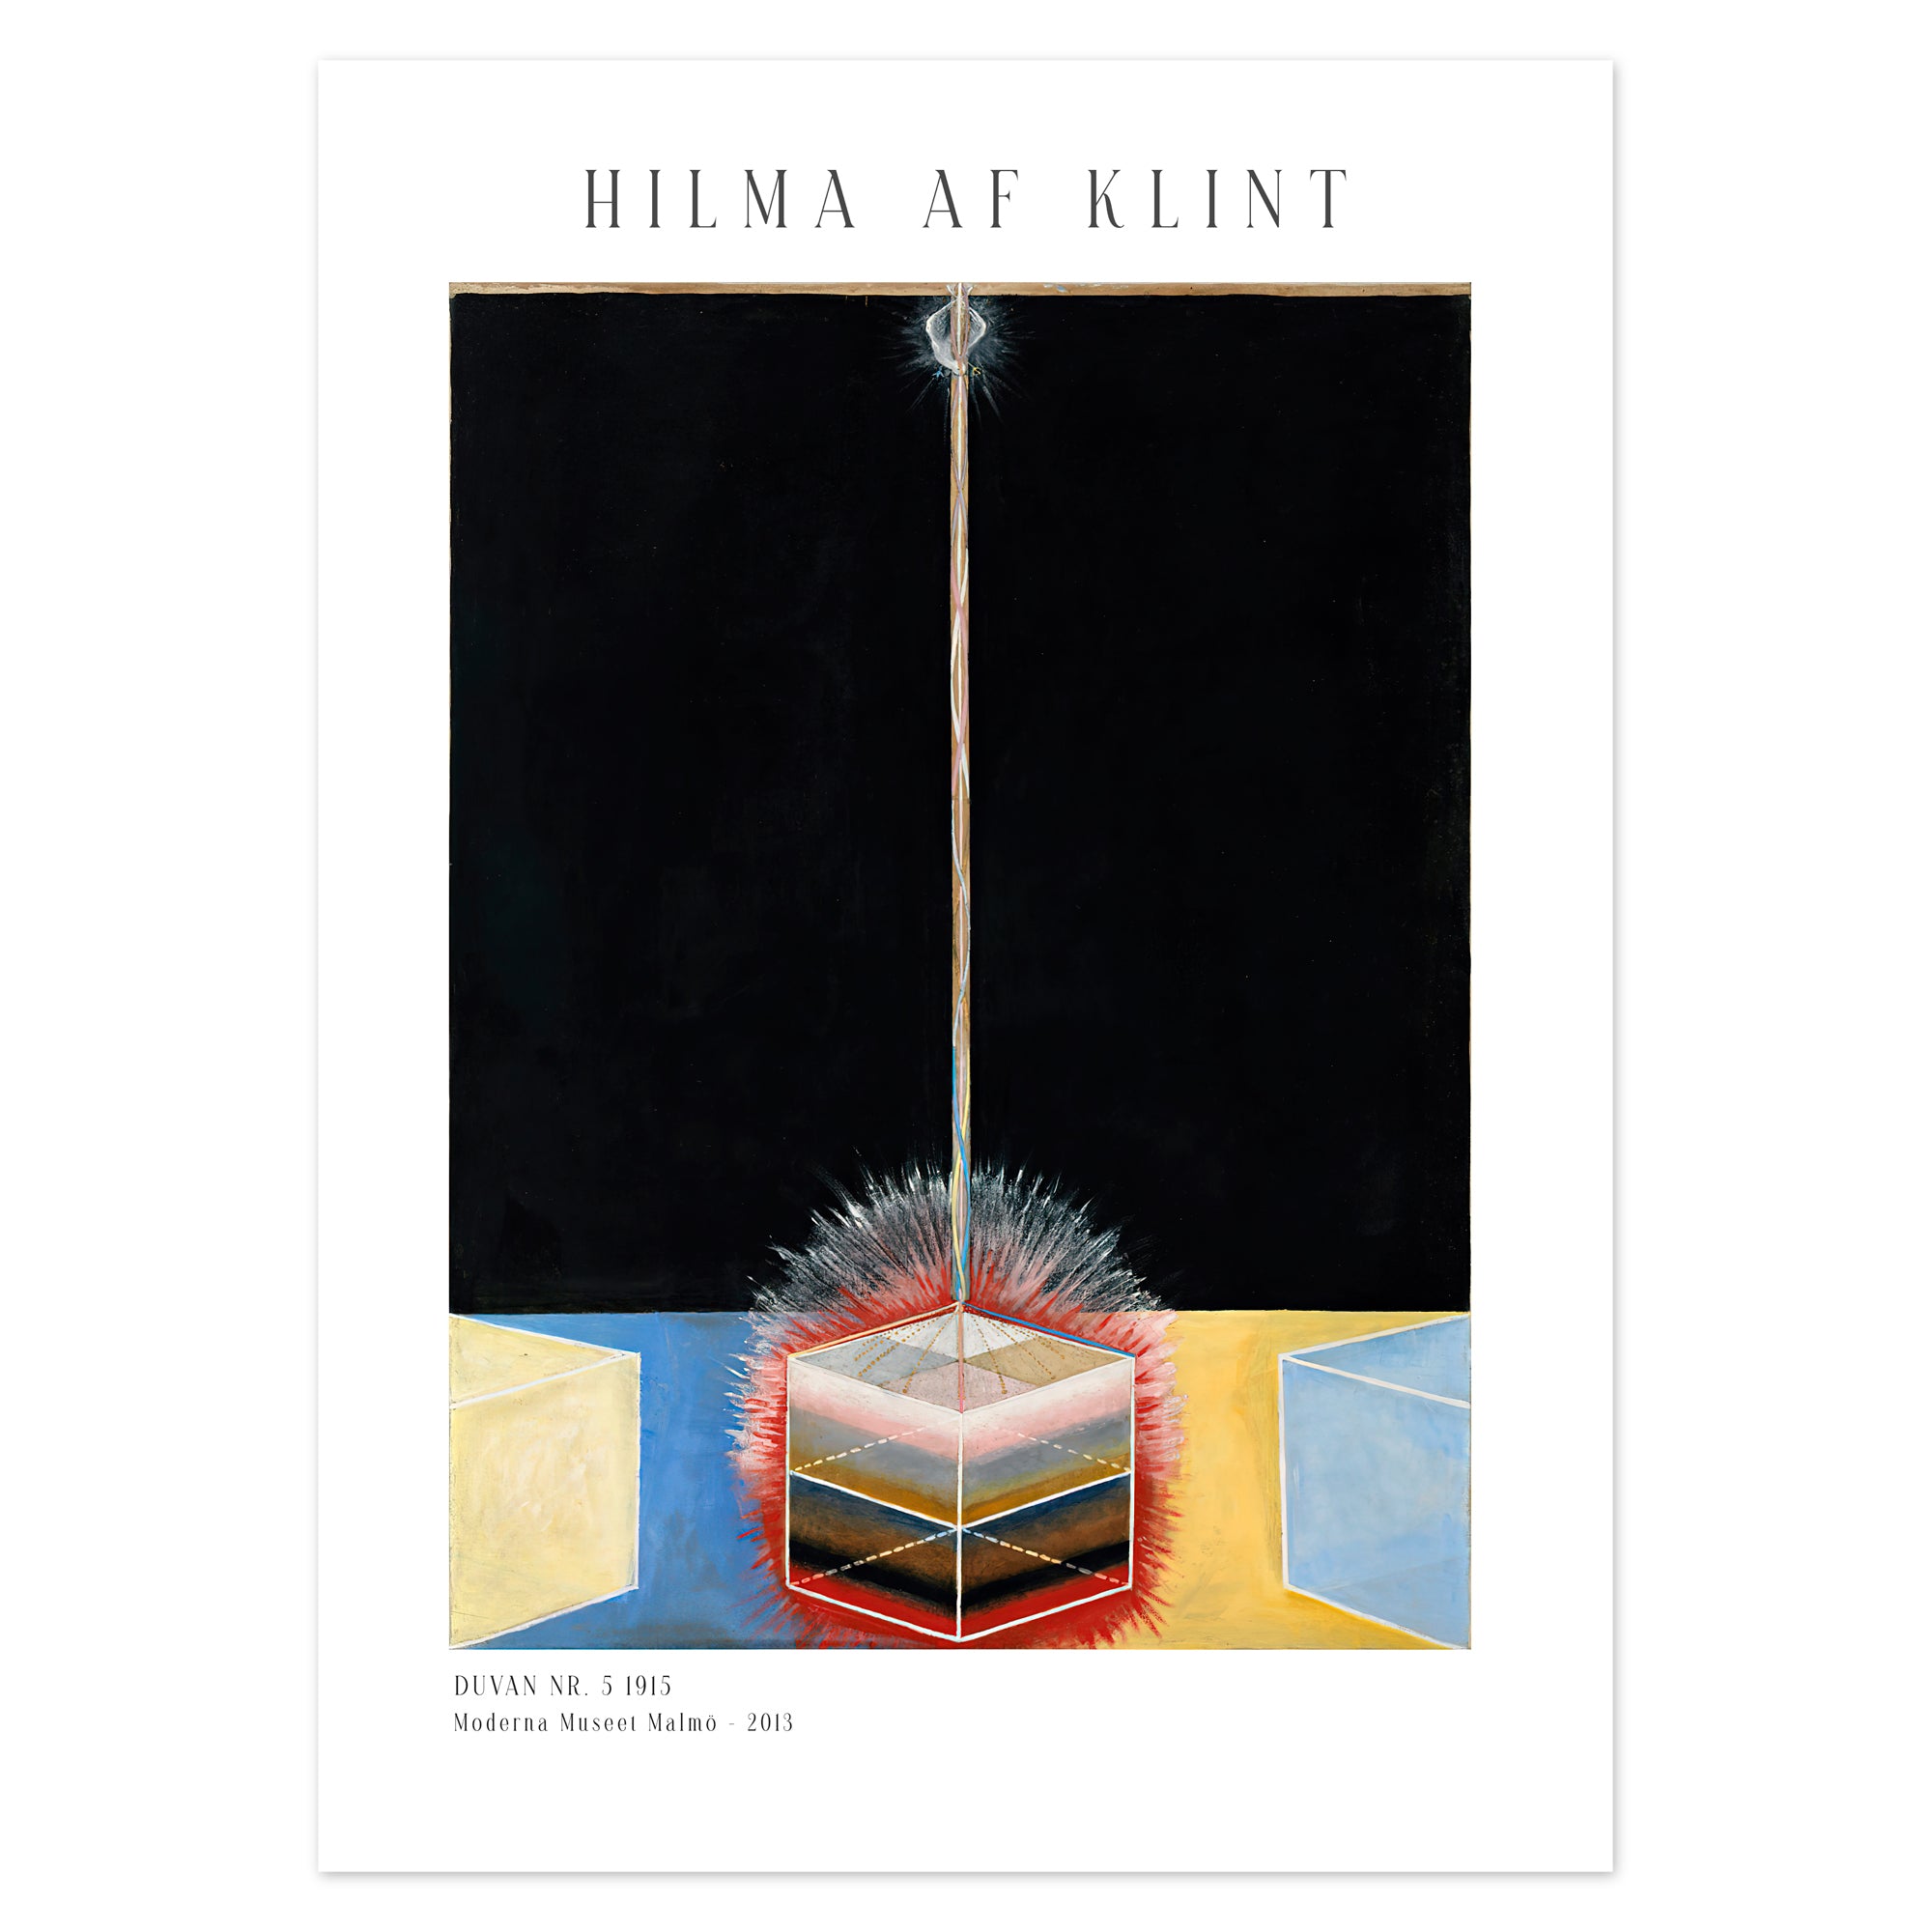 Hilma af Klint Poster - Duvan nr. 5